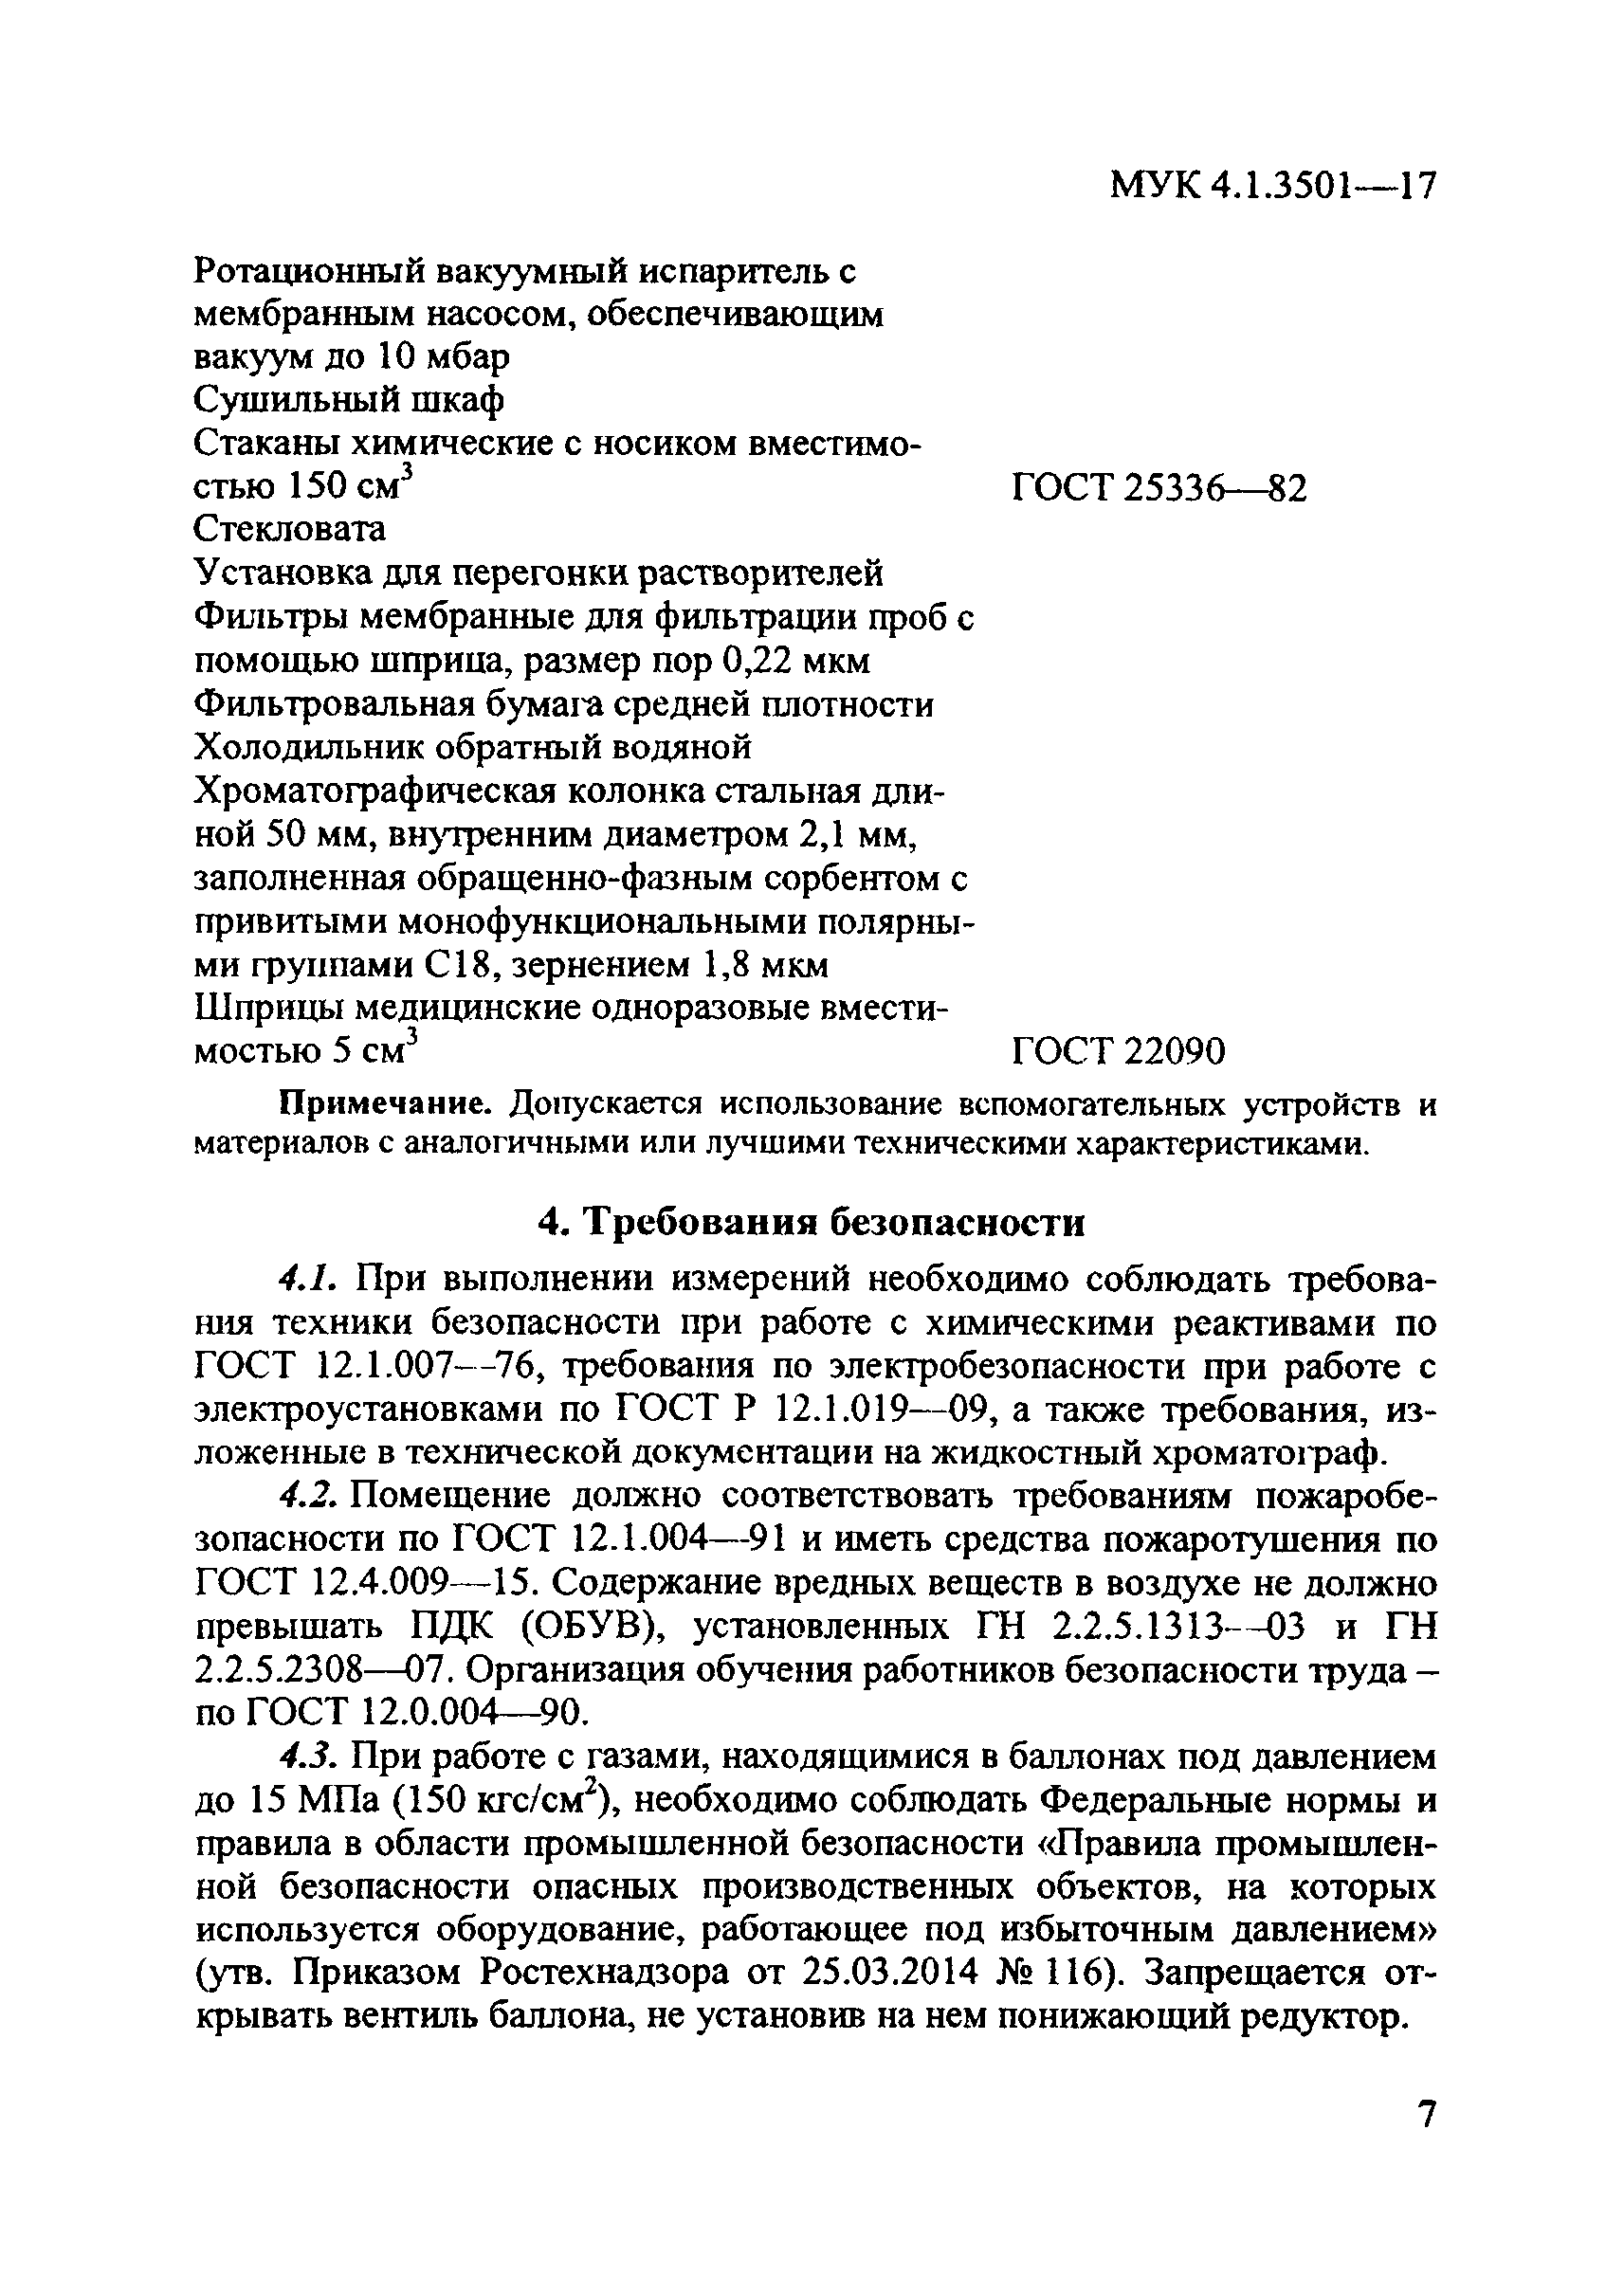 МУК 4.1.3501-17